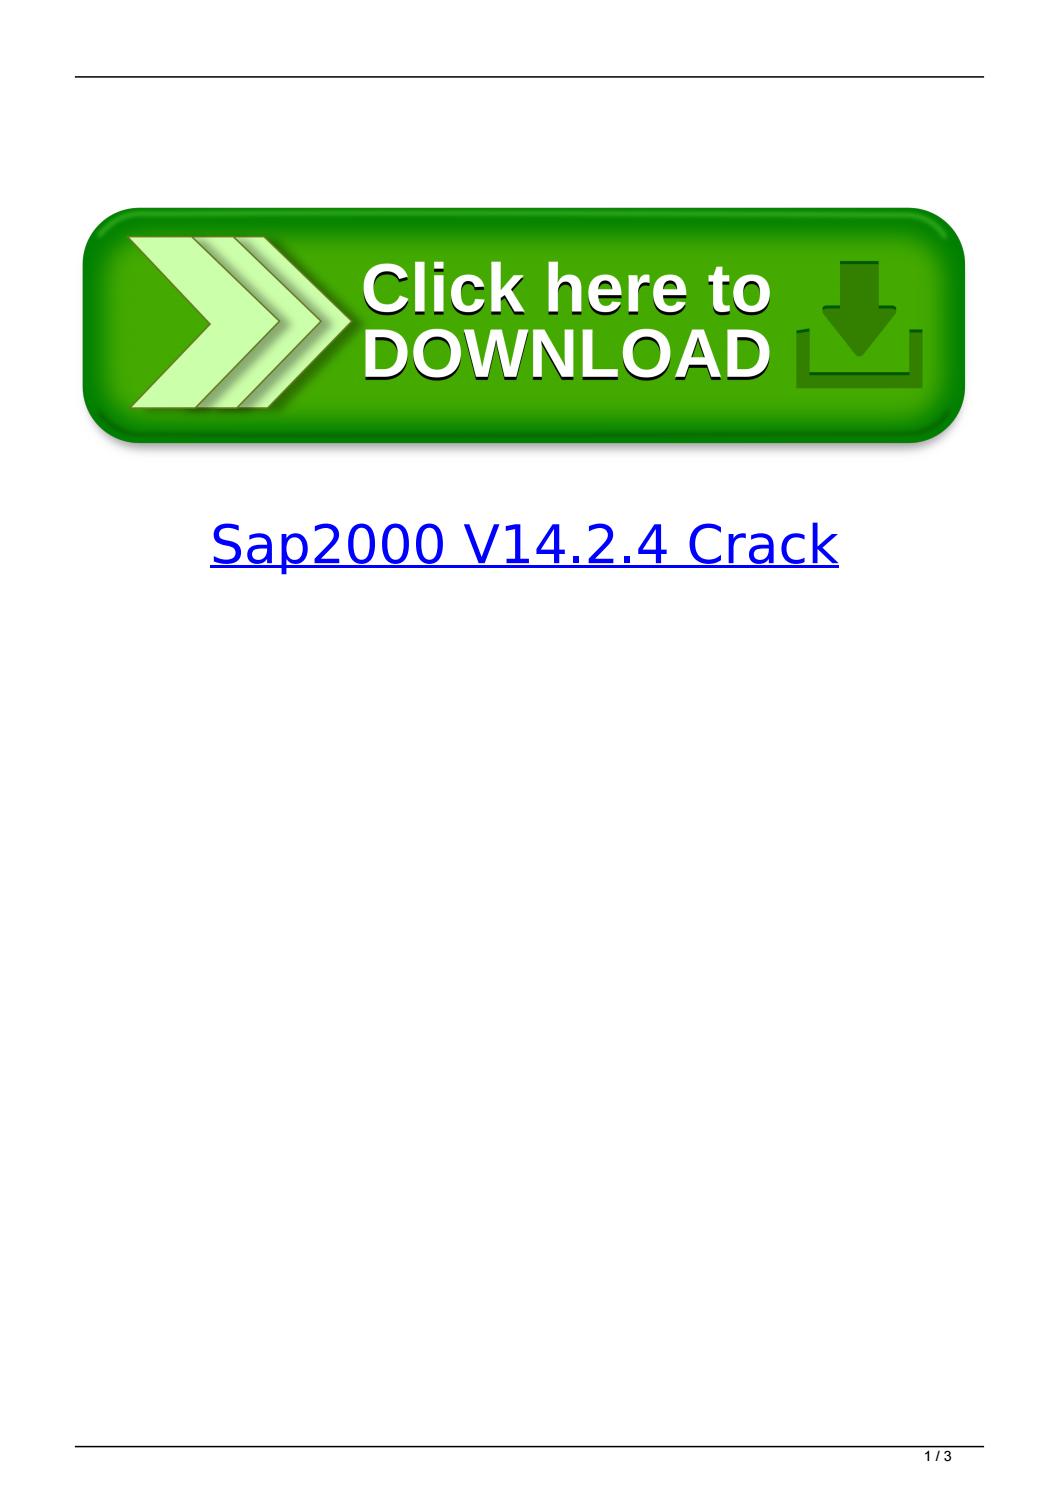 sap2000 for mac